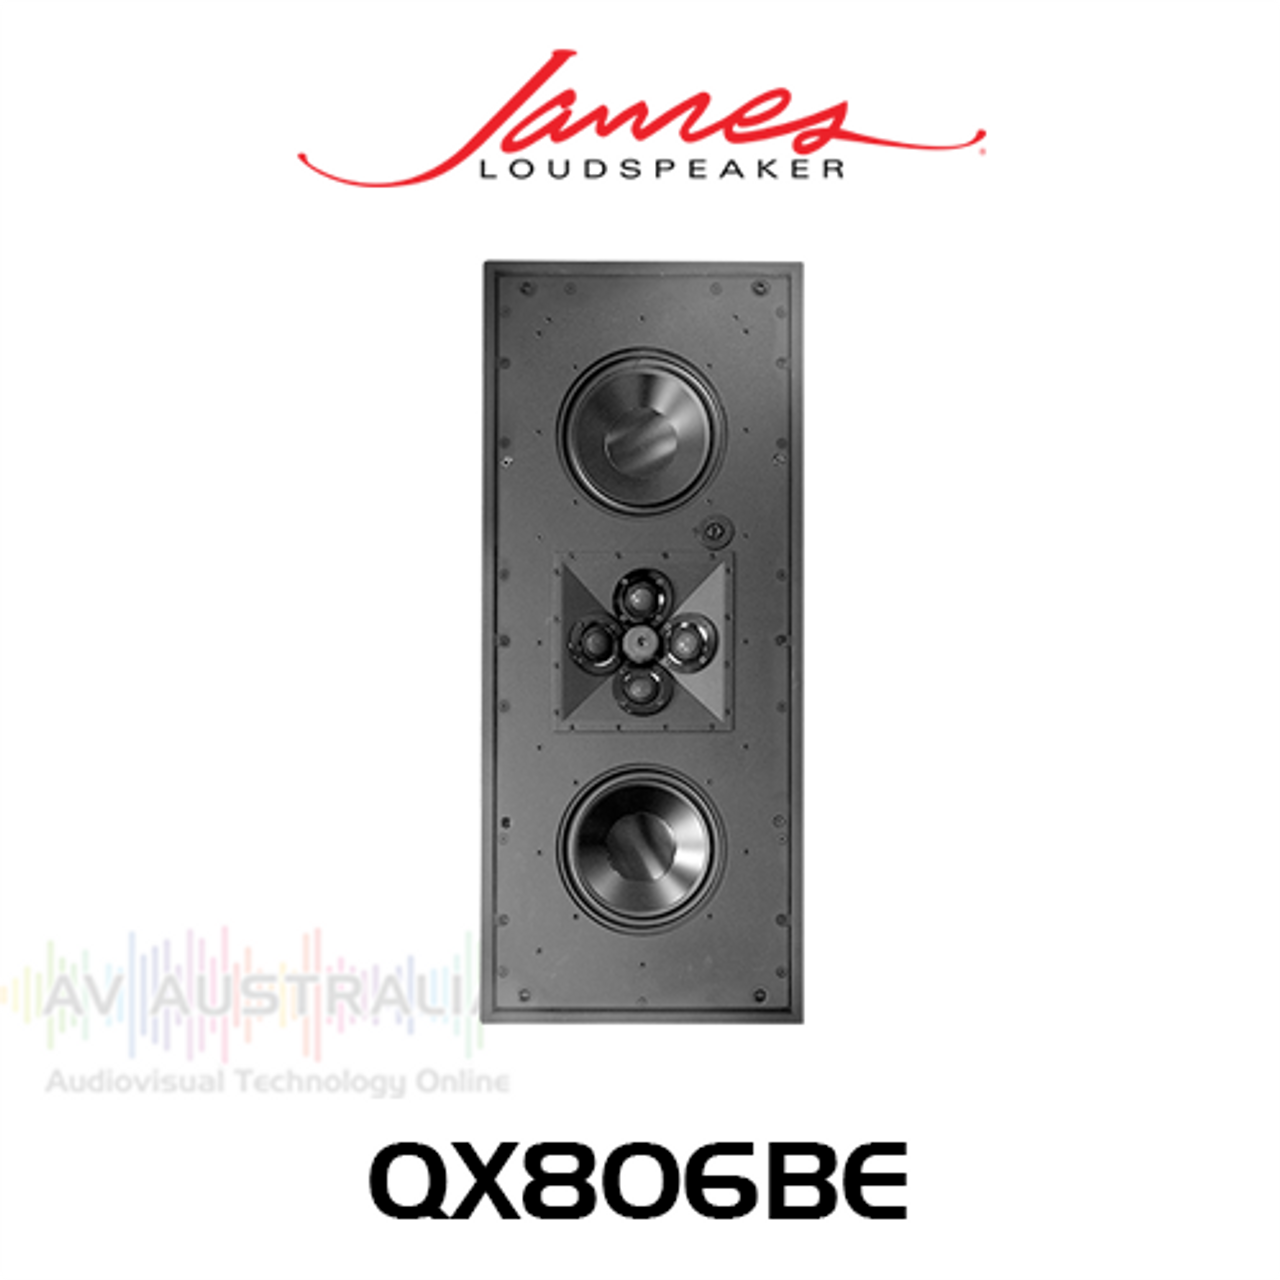 James Loudspeaker QX806BE Dual 8" 3-Way In-Wall LCR Loudspeaker (Each)